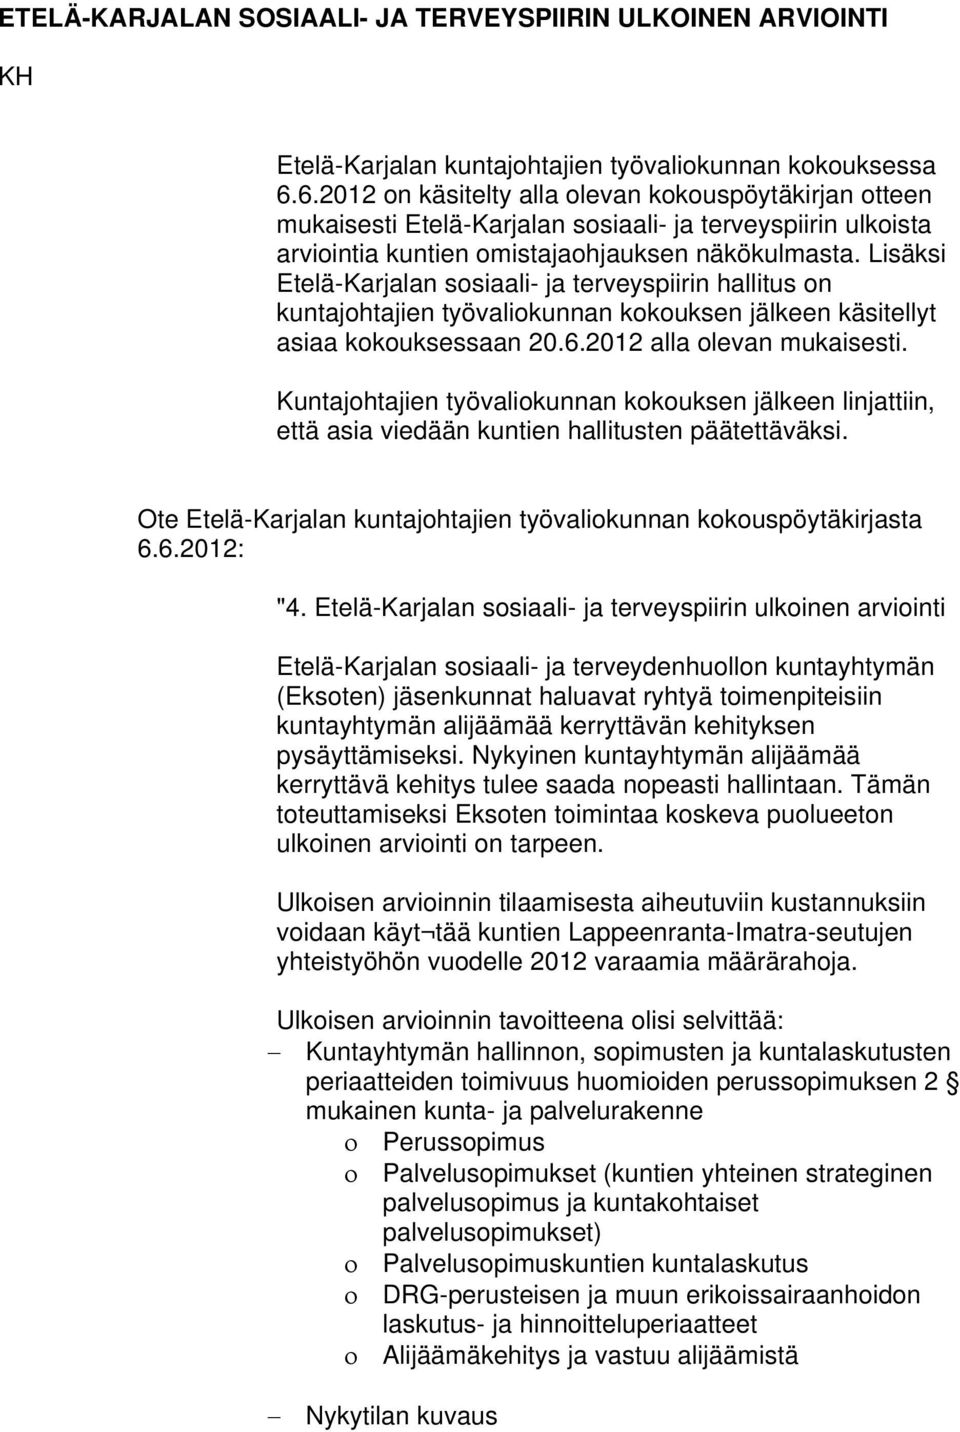 Lisäksi Etelä-Karjalan sosiaali- ja terveyspiirin hallitus on kuntajohtajien työvaliokunnan kokouksen jälkeen käsitellyt asiaa kokouksessaan 20.6.2012 alla olevan mukaisesti.